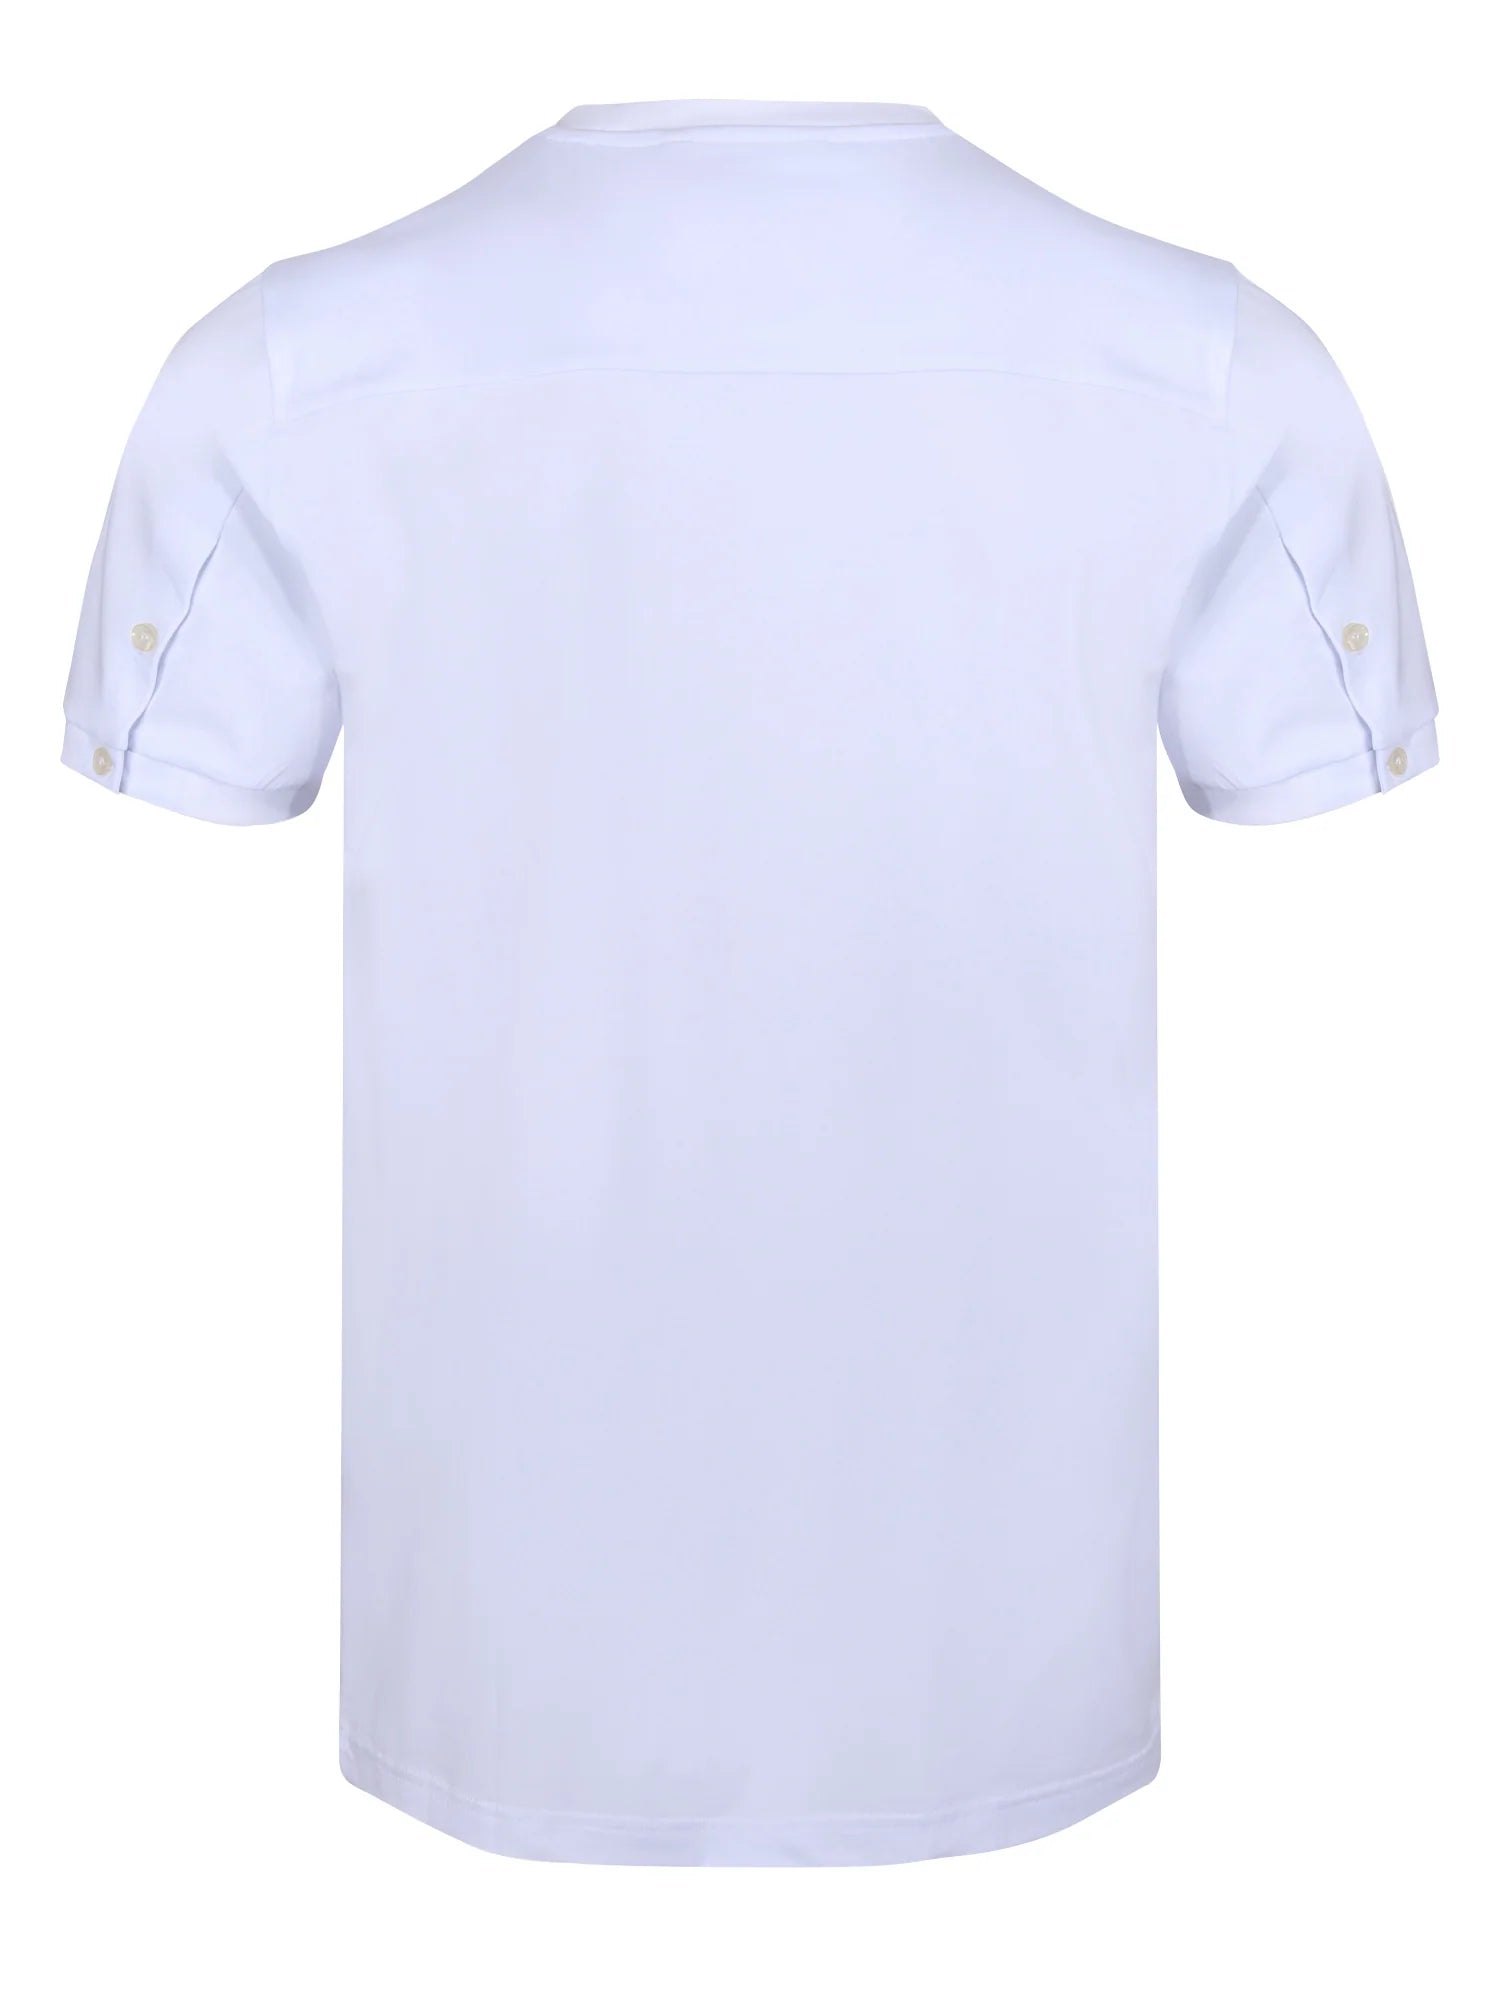 Luke Shanghai T-Shirt White